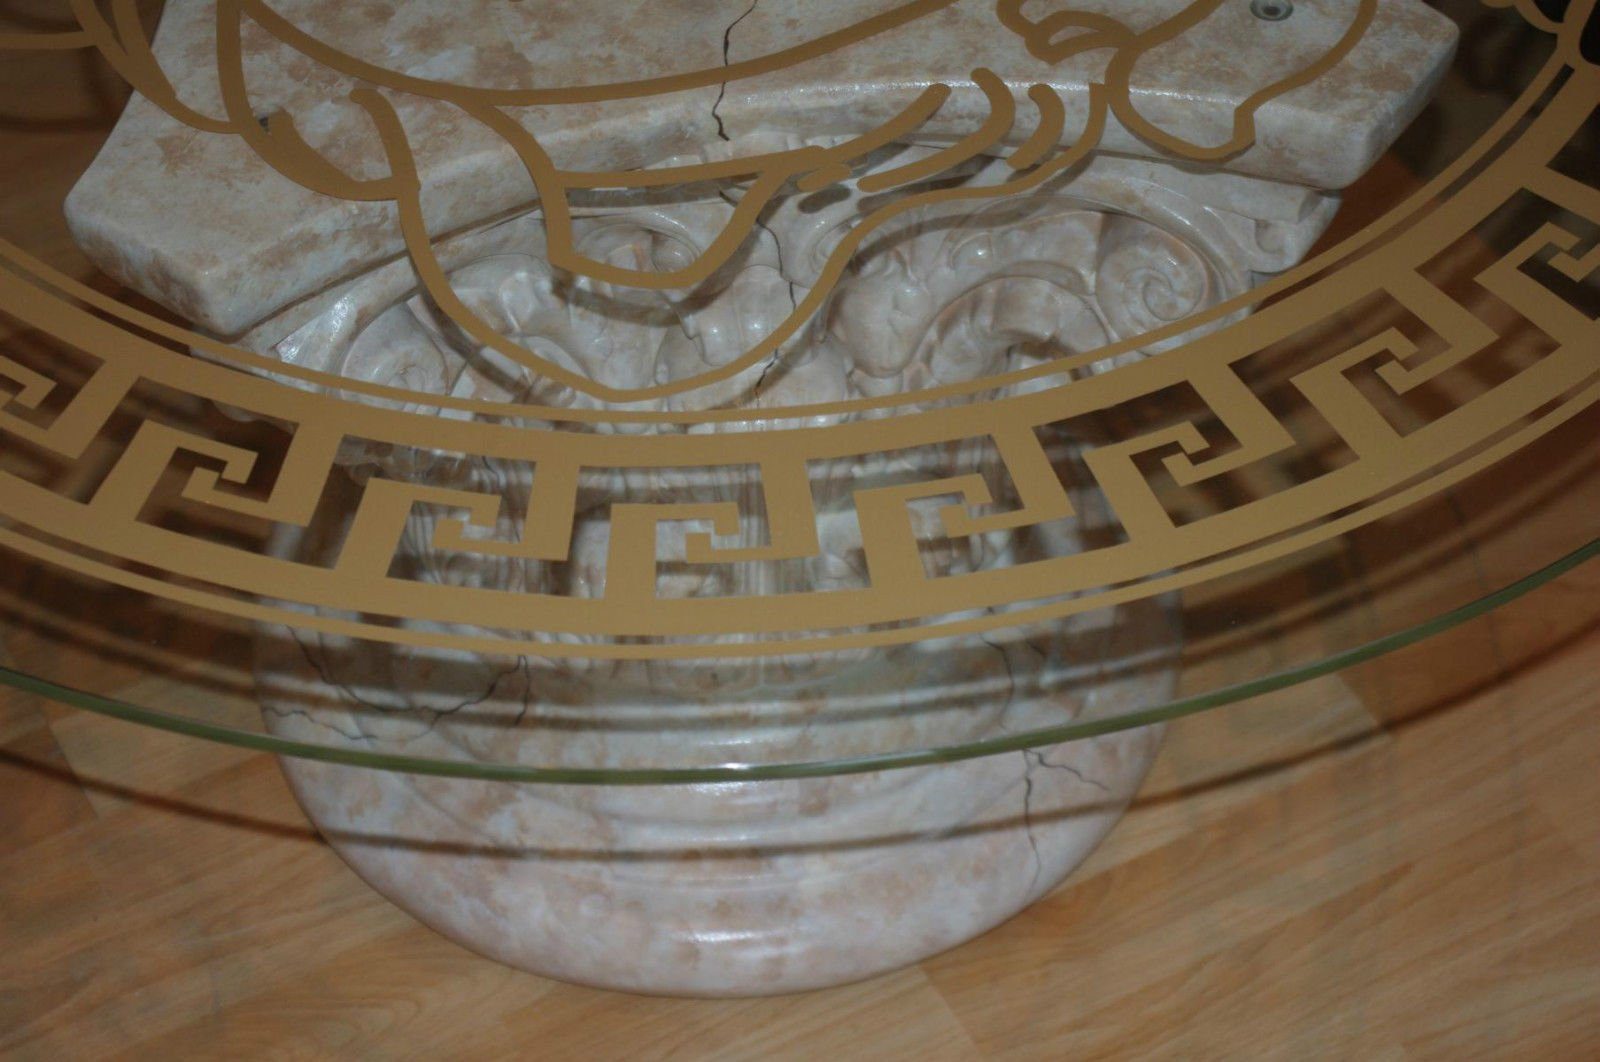 Couchtisch Marmortisch Glastisch Wohnzimmertisch Steinmöbel Runder Couchtisch Antikes Wohndesign